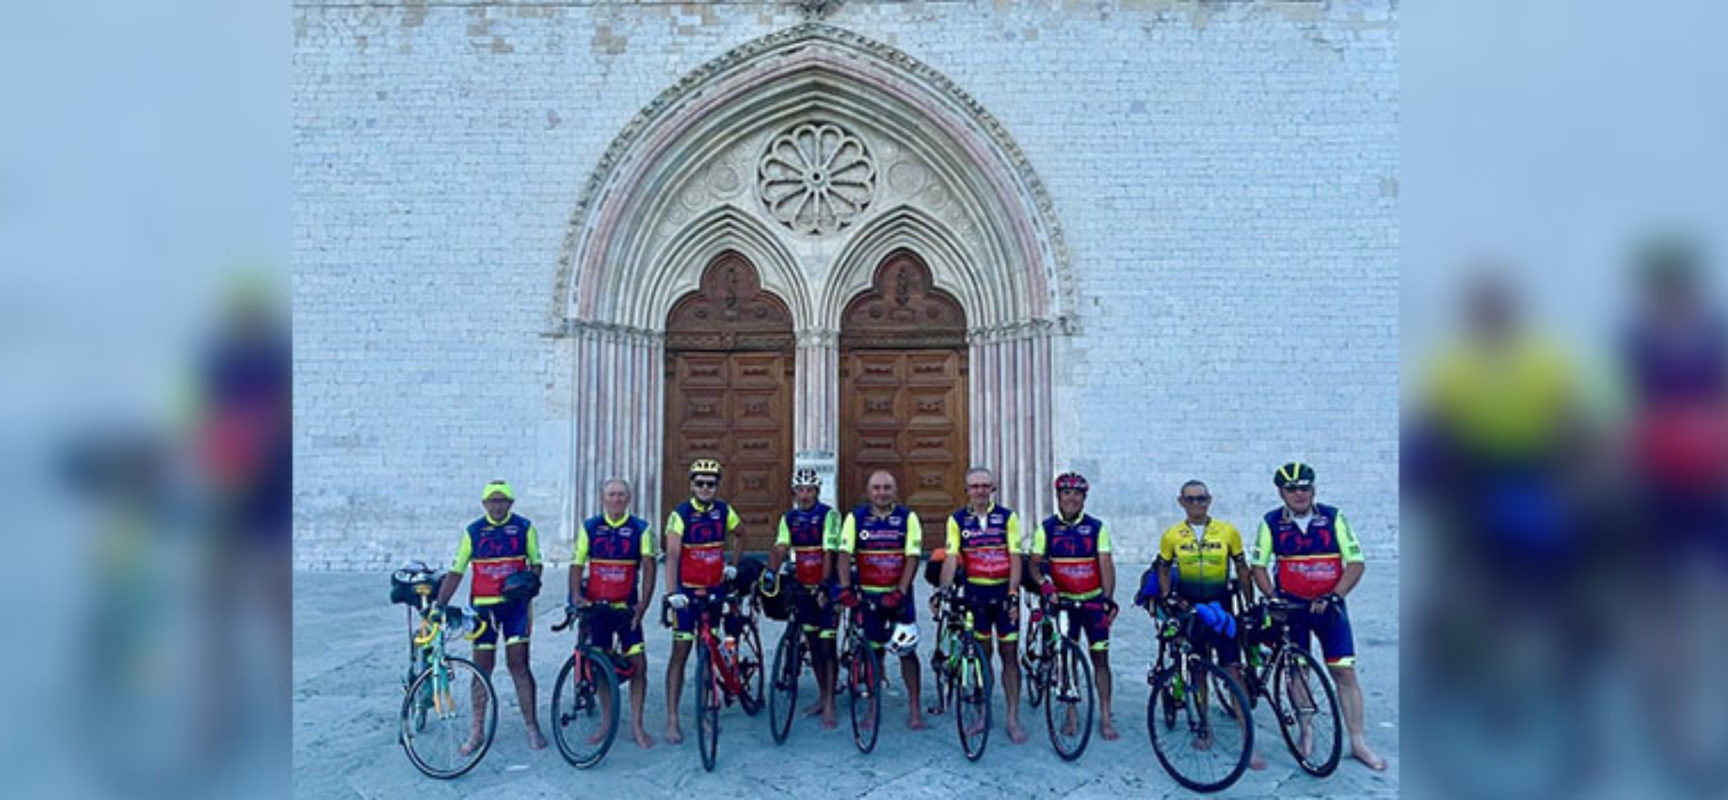 Avis Mtb “Carlo Gangai”, da Bisceglie ad Assisi pedalando in bici